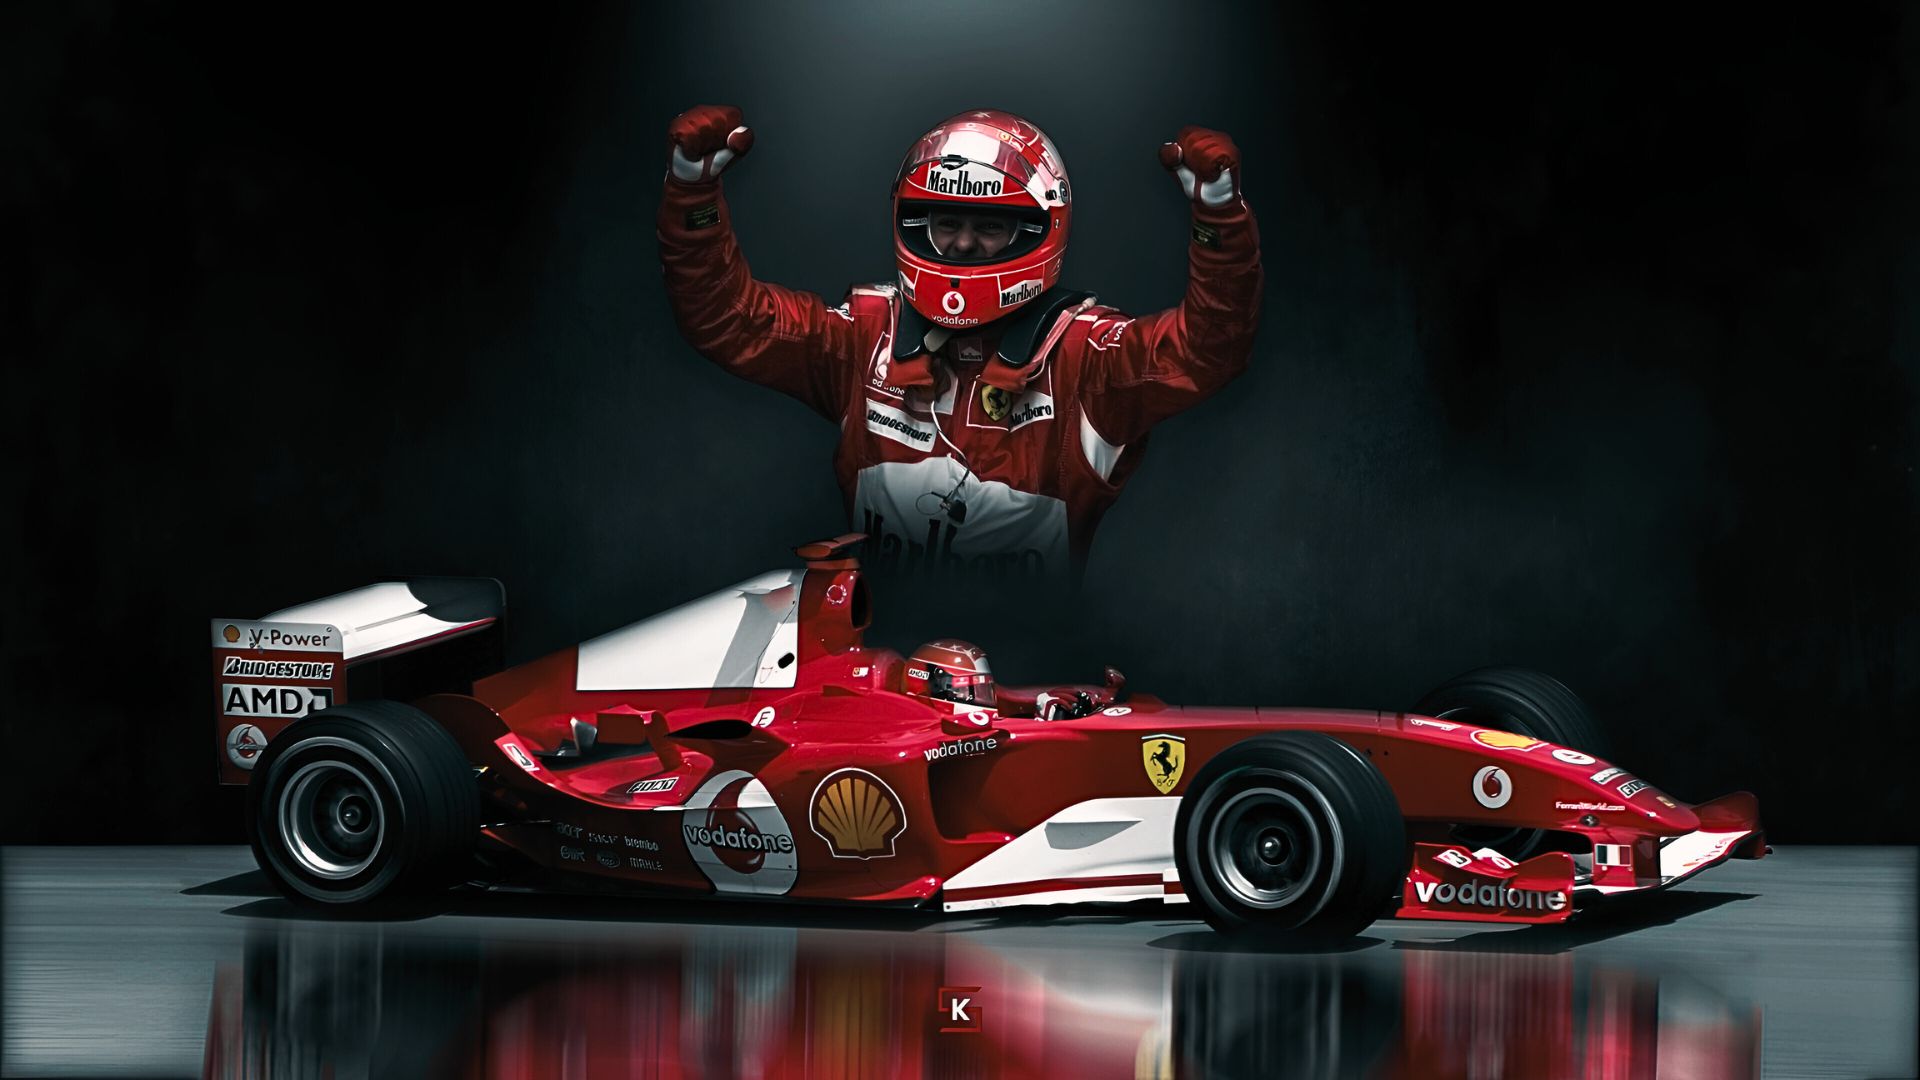 Michael Schumacher Wallpaper 4K For Laptop